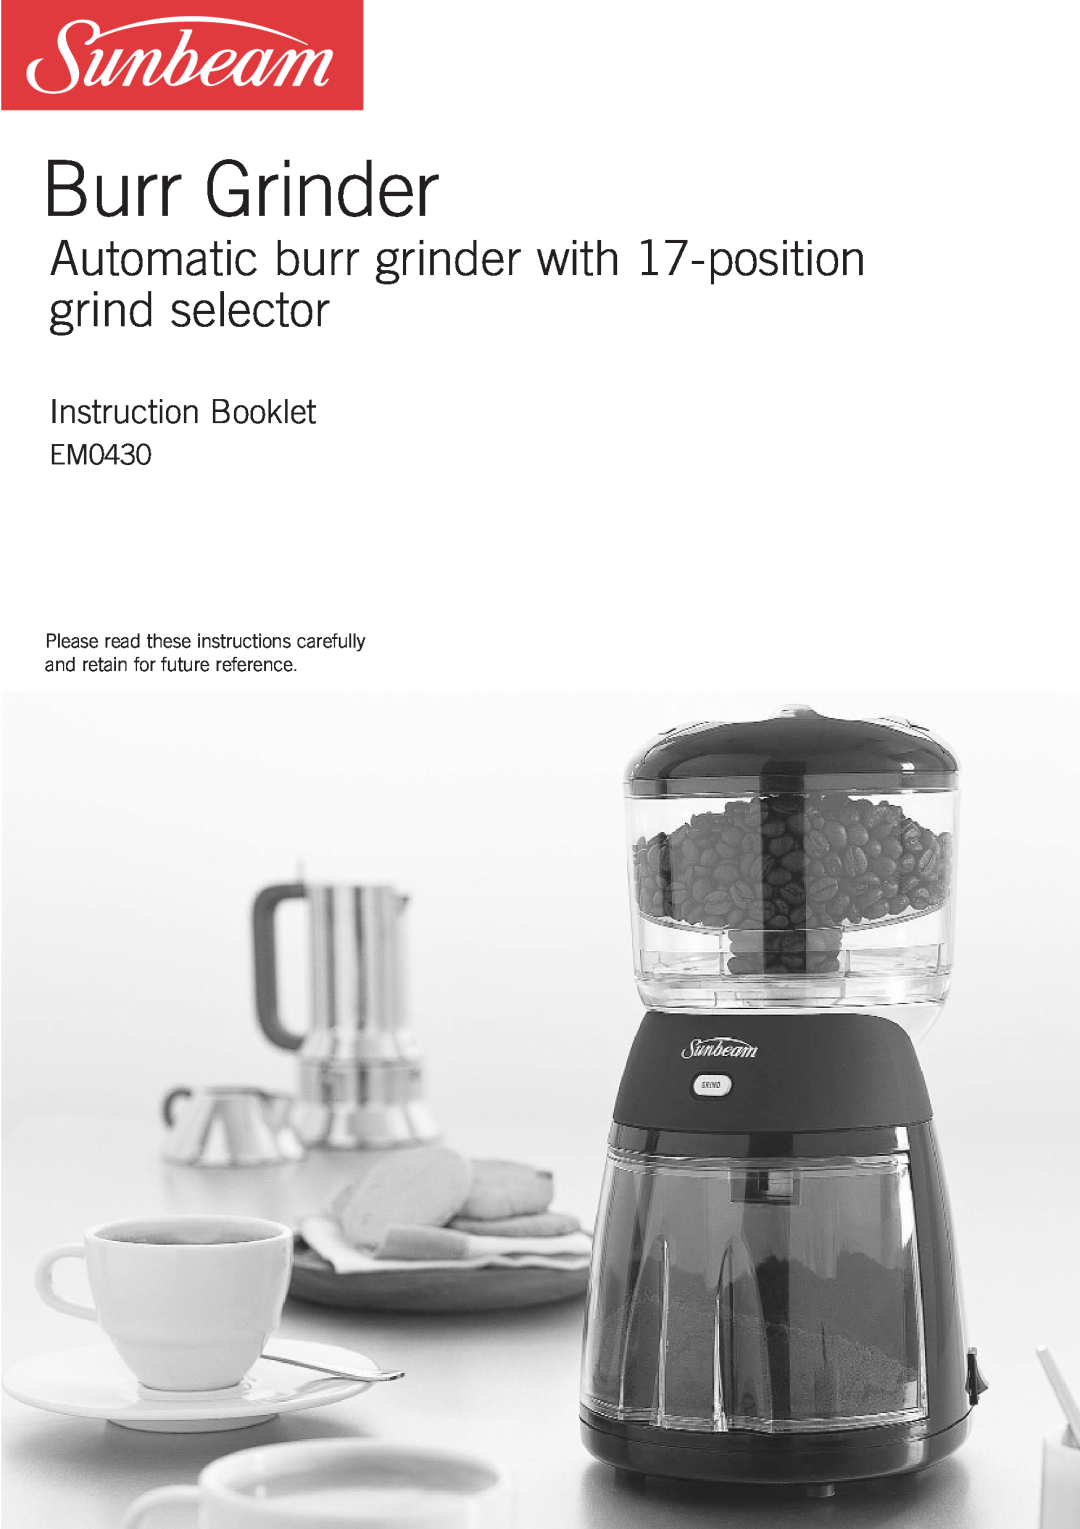 Sunbeam EM0430 manual Burr Grinder, Instruction Booklet 